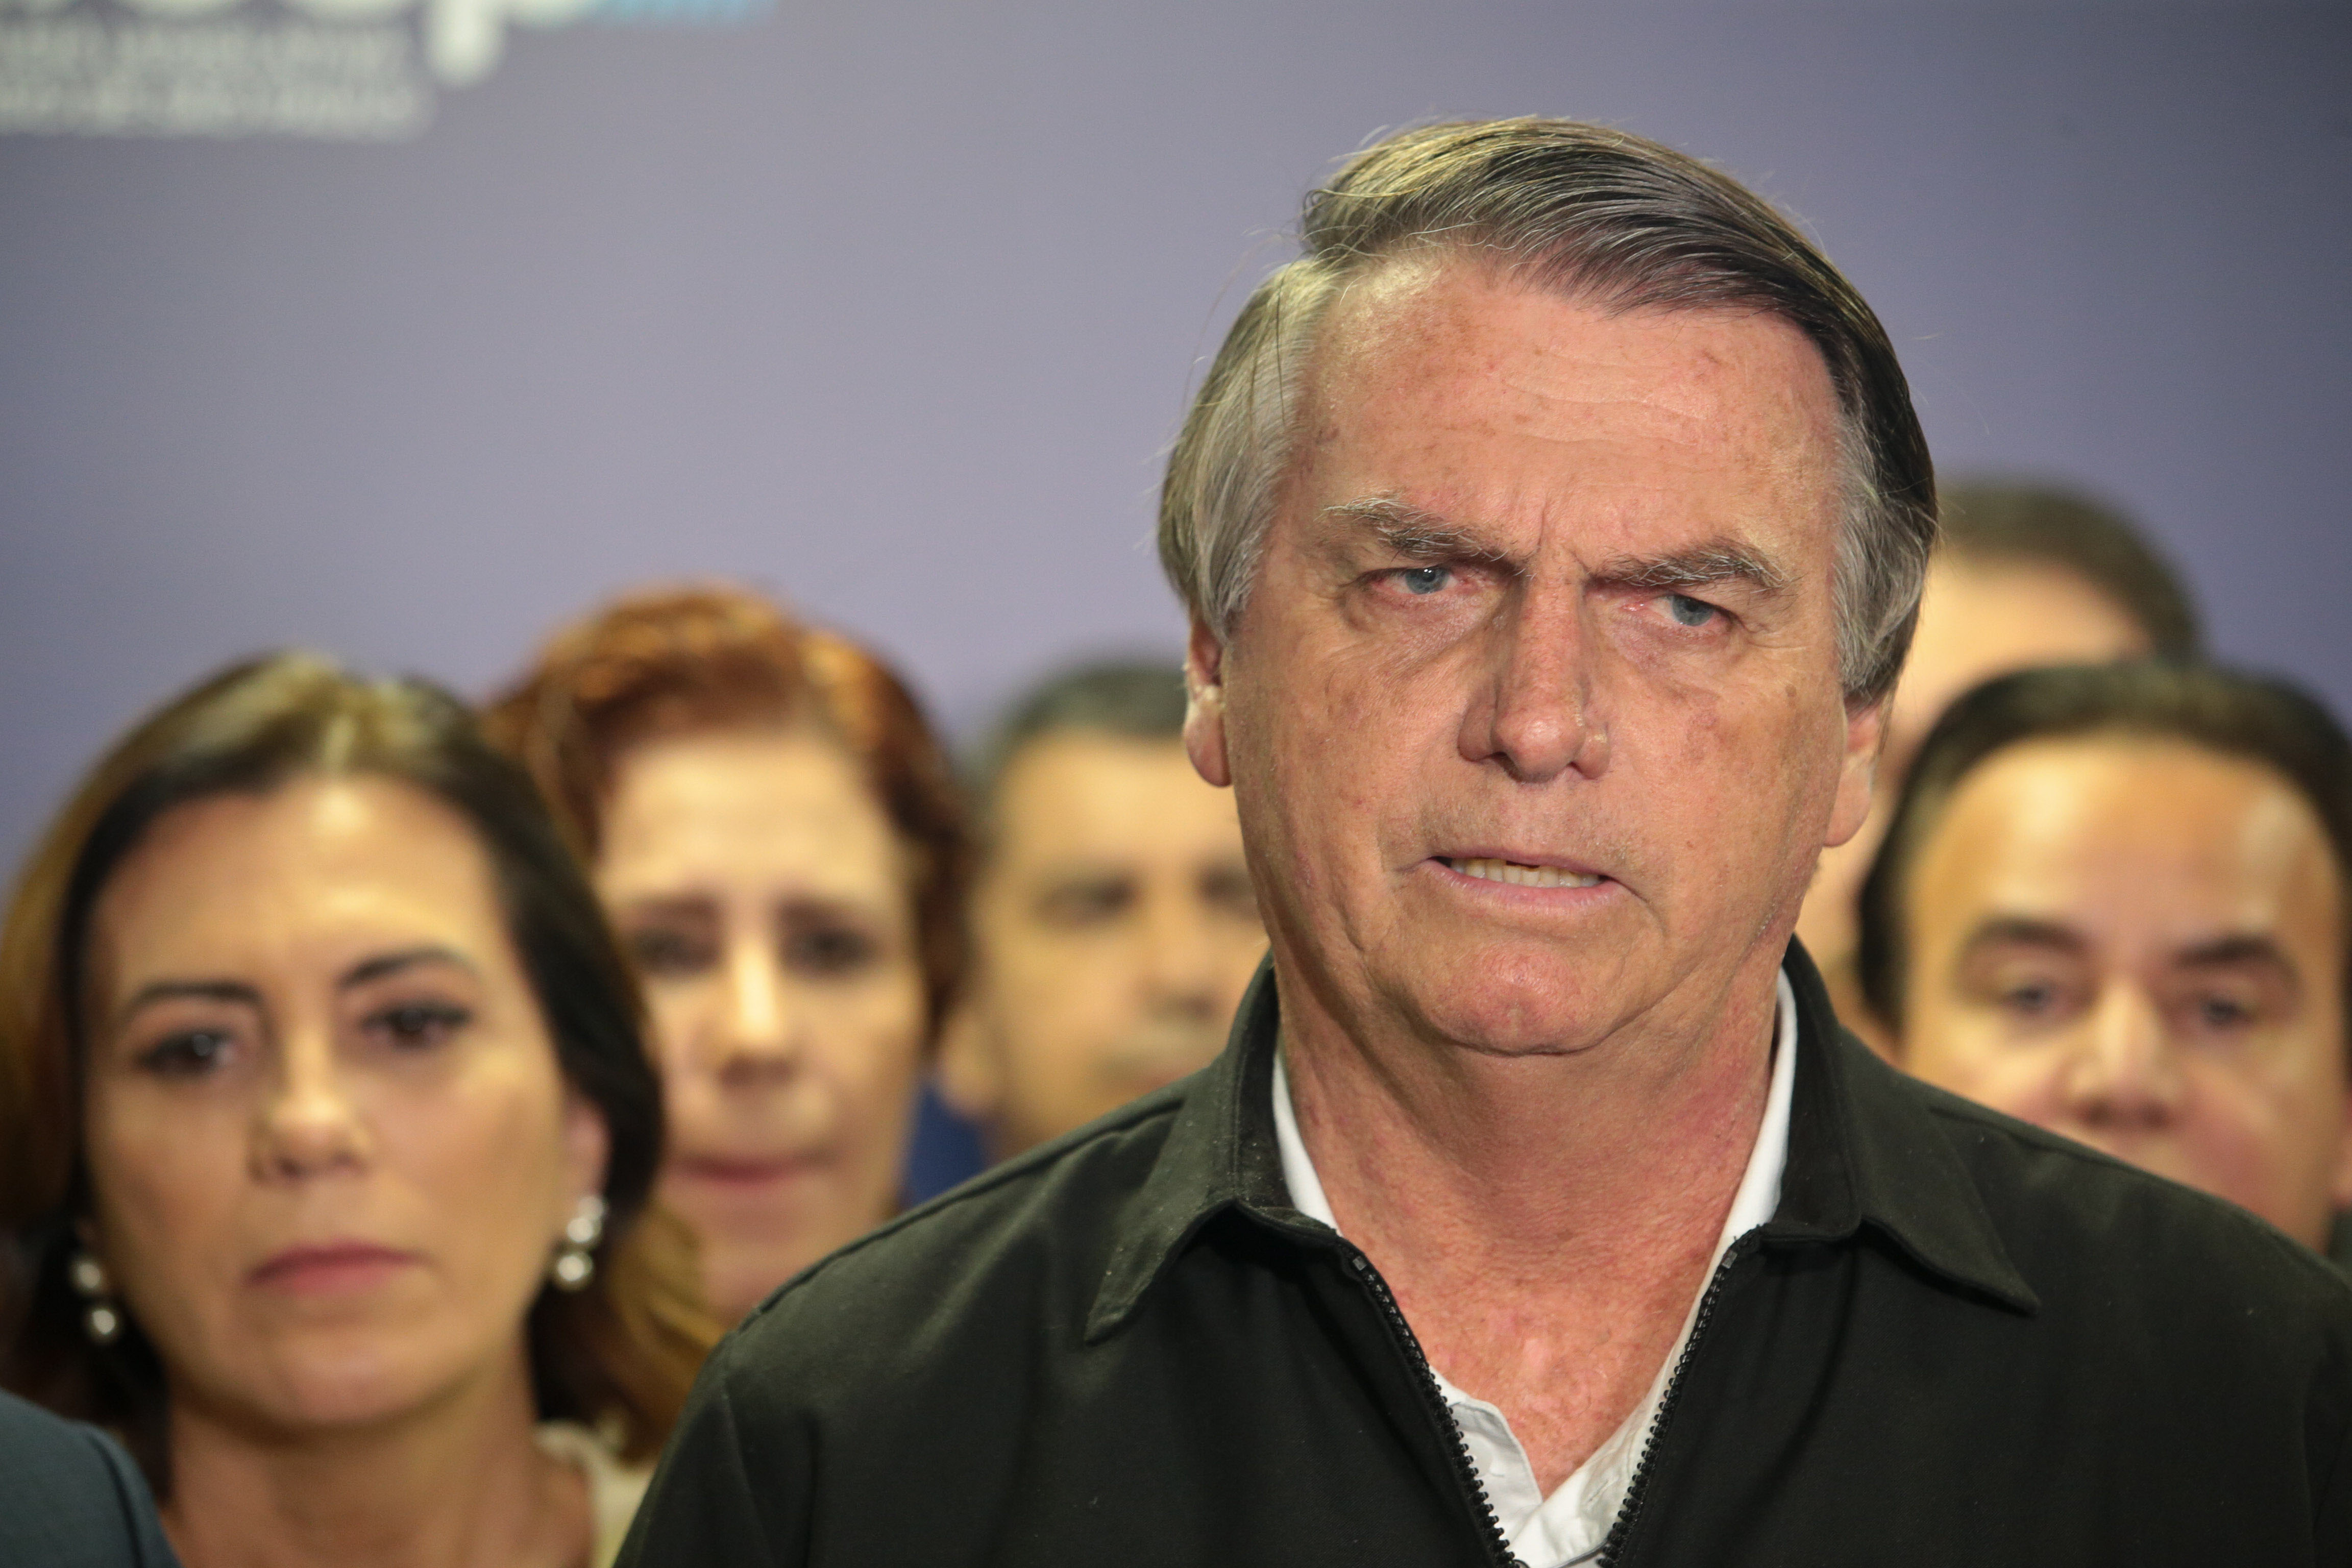 Cassação de Bolsonaro deixa evangélicos mais próximos de Lula